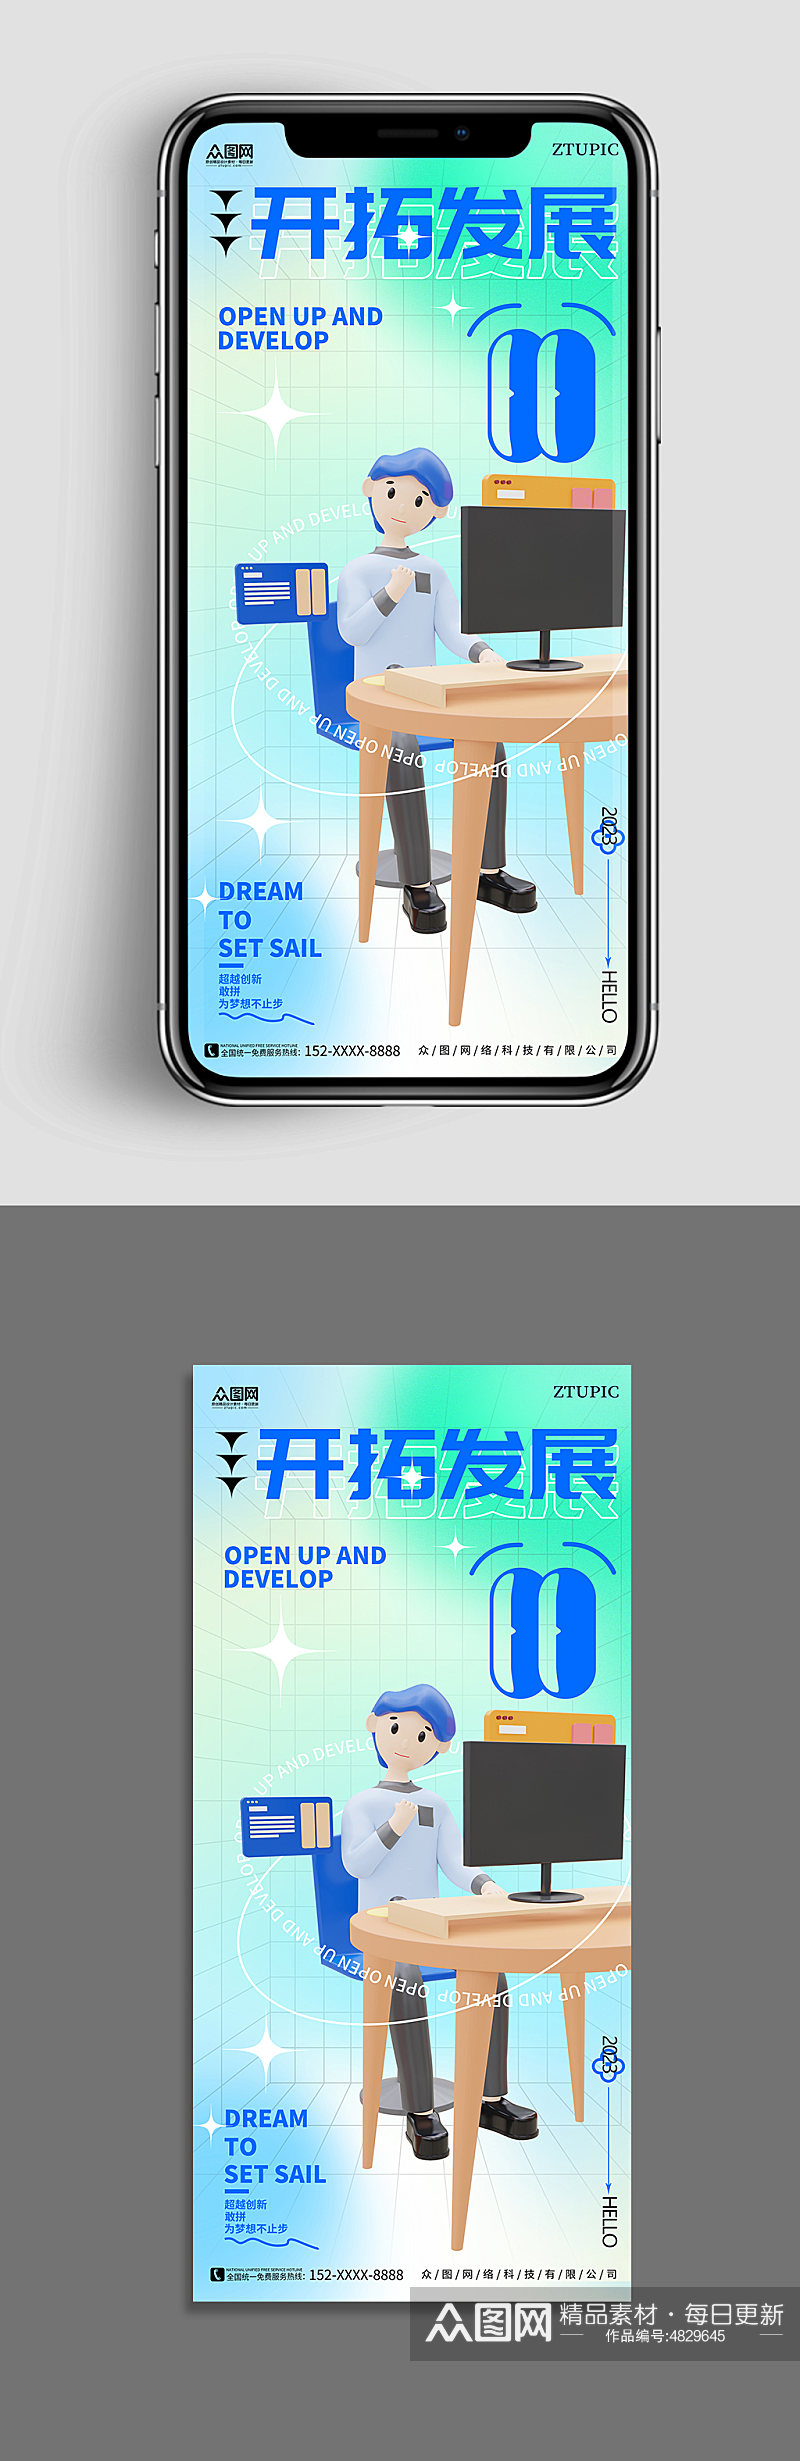 蓝色弥散风企业励志标语模型手机ui海报素材